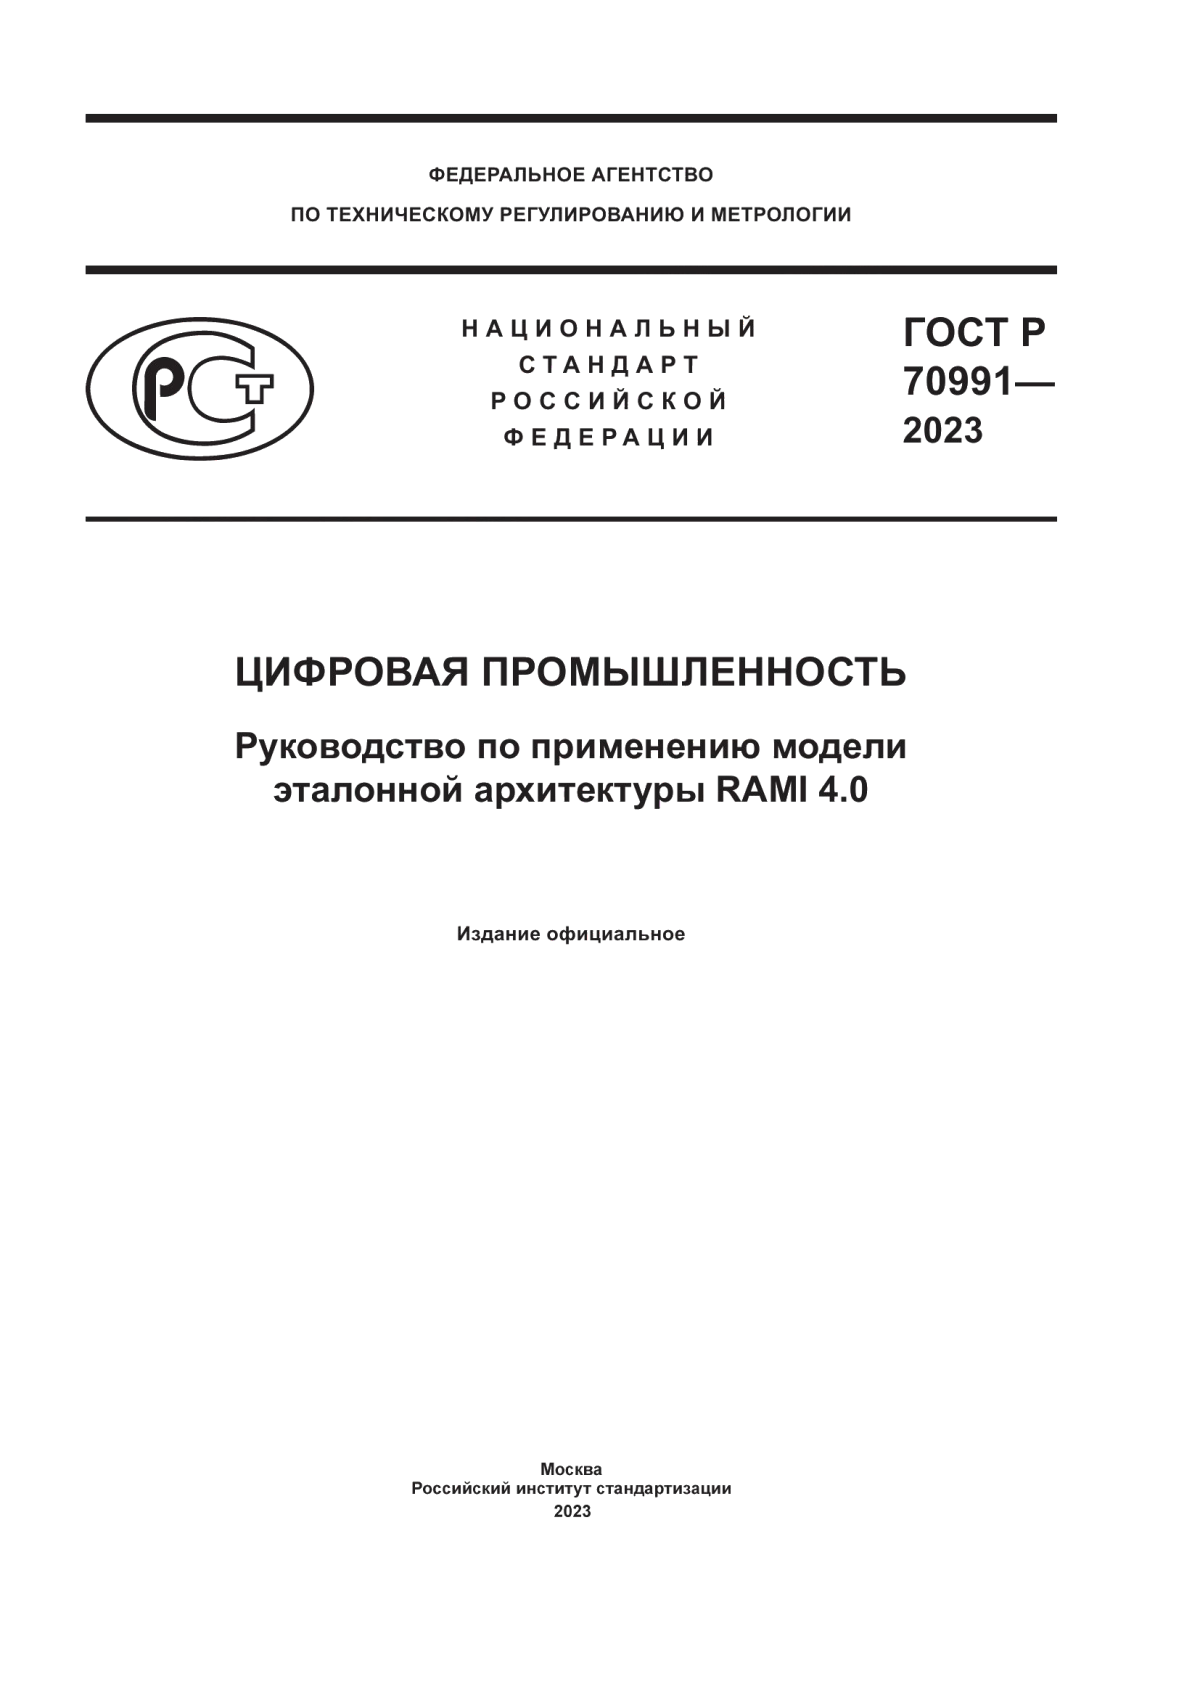 ГОСТ Р 70991-2023 Цифровая промышленность. Руководство по применению модели эталонной архитектуры RAMI 4.0